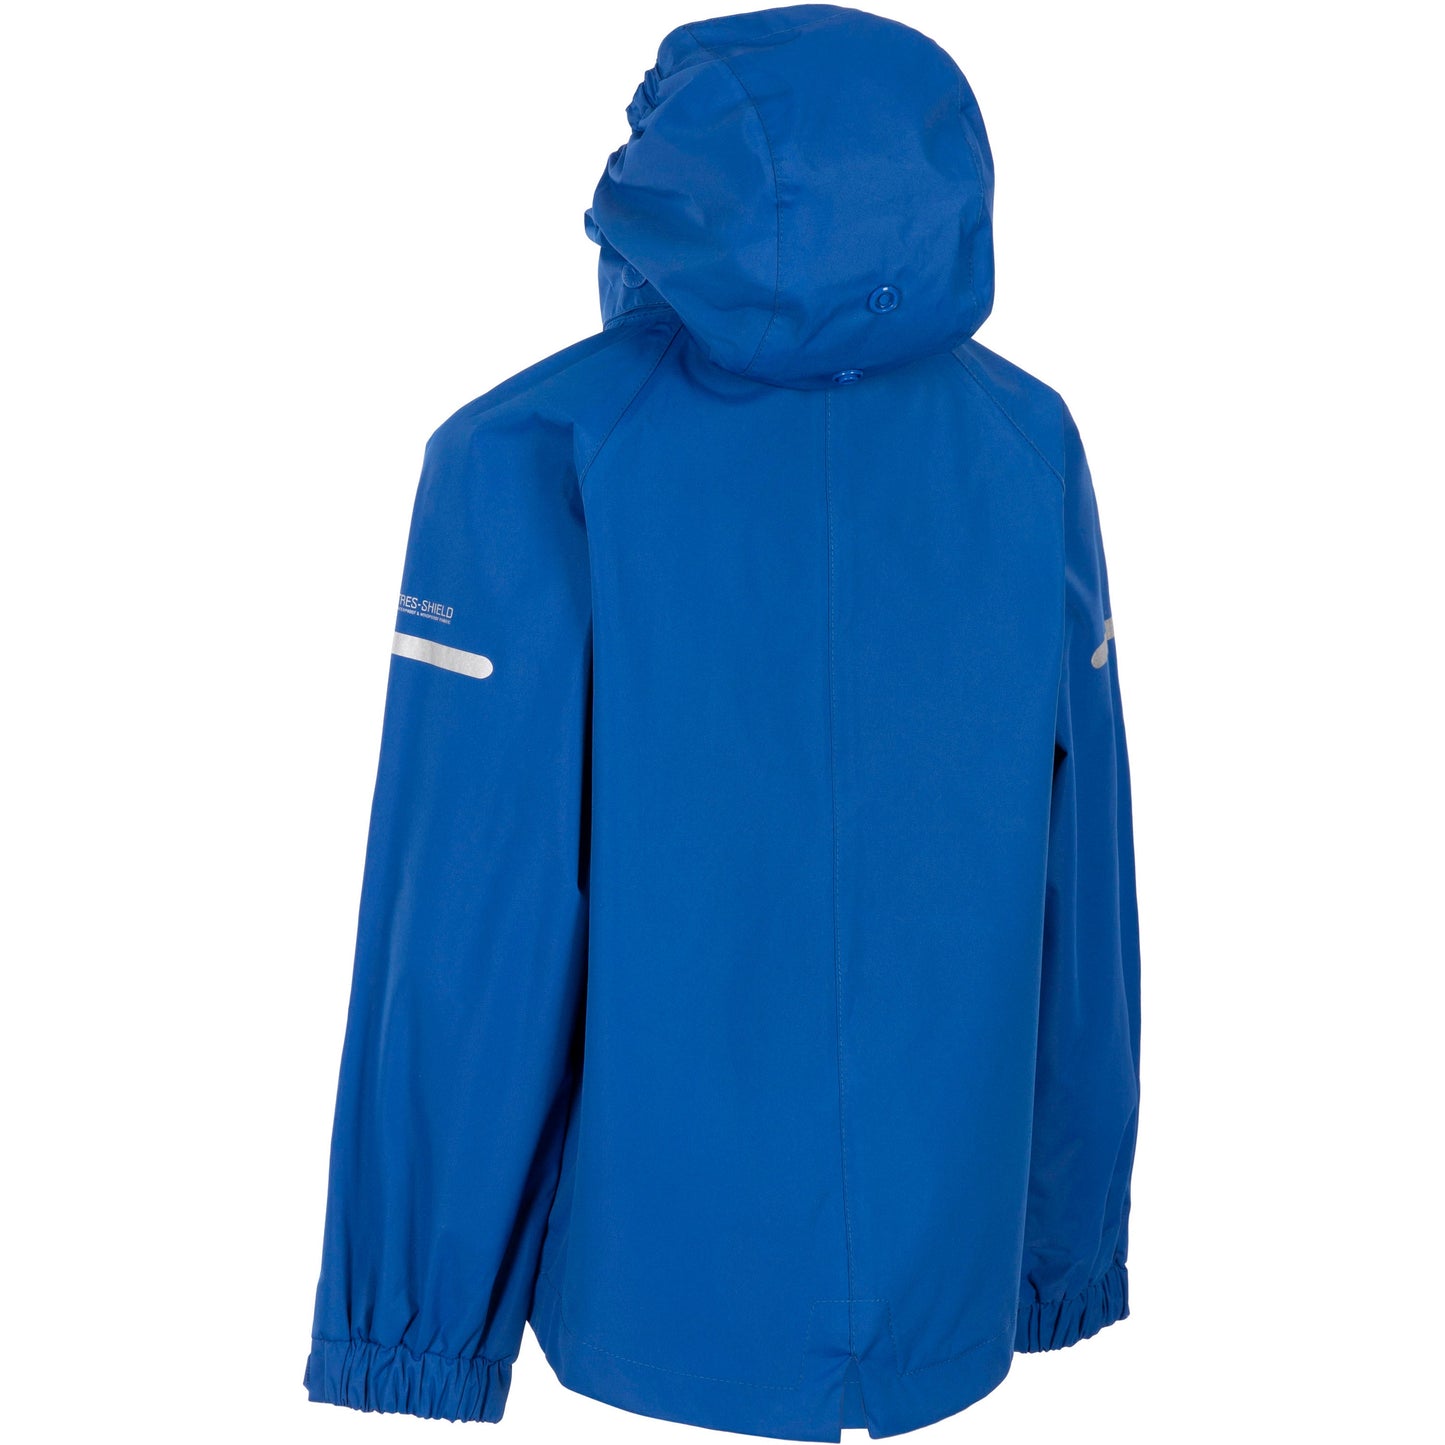 Bluster Unisex Kids Unpadded Waterproof Jacket in Blue